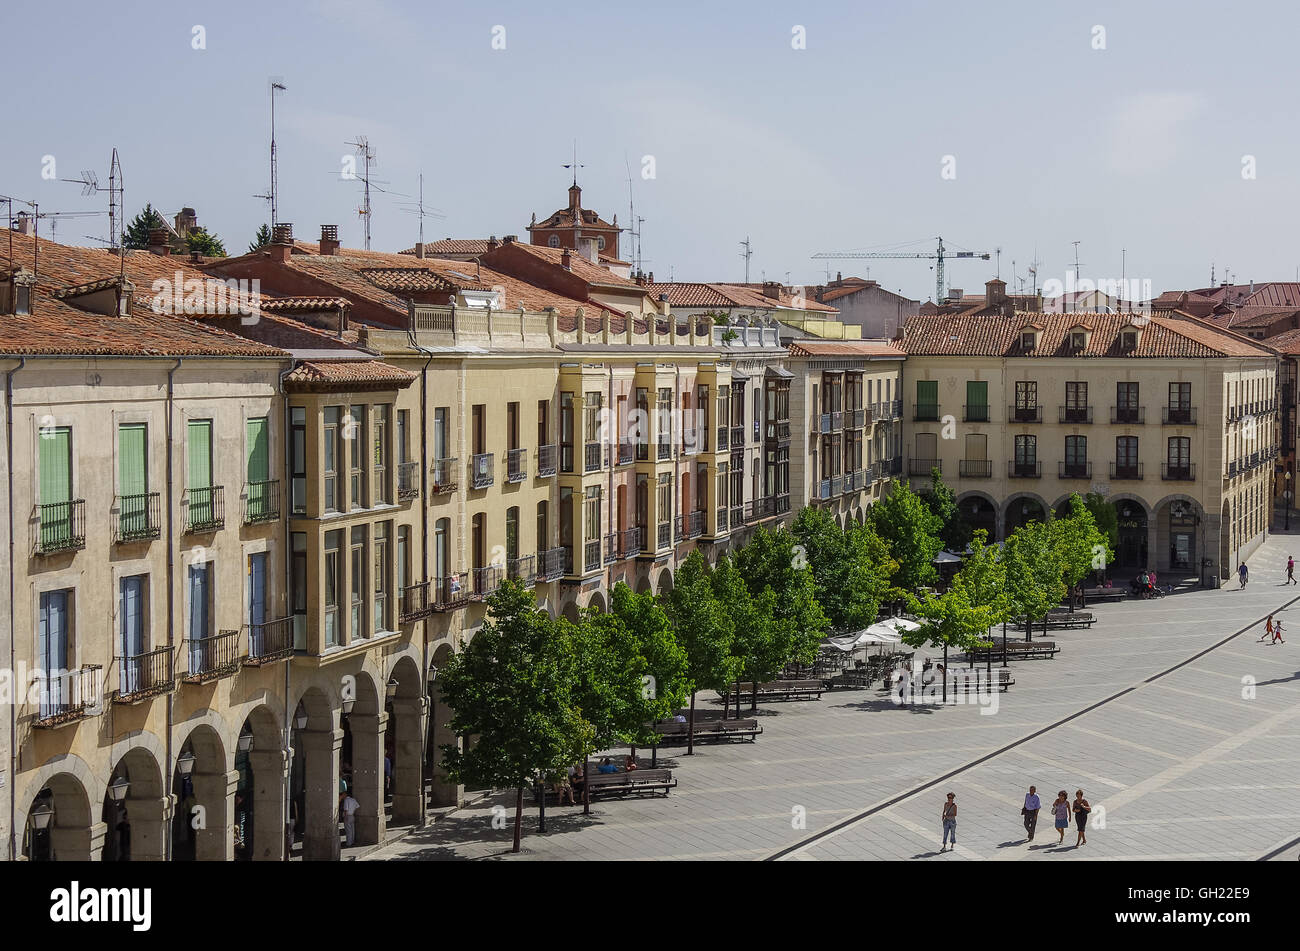 Avila, Espagne - Août 23, 2012 : Avis de bâtiments sur la Plaza de Santa Teresa de Jesus à partir de la ville médiévale des murs. Castilla y Leon, Spa Banque D'Images